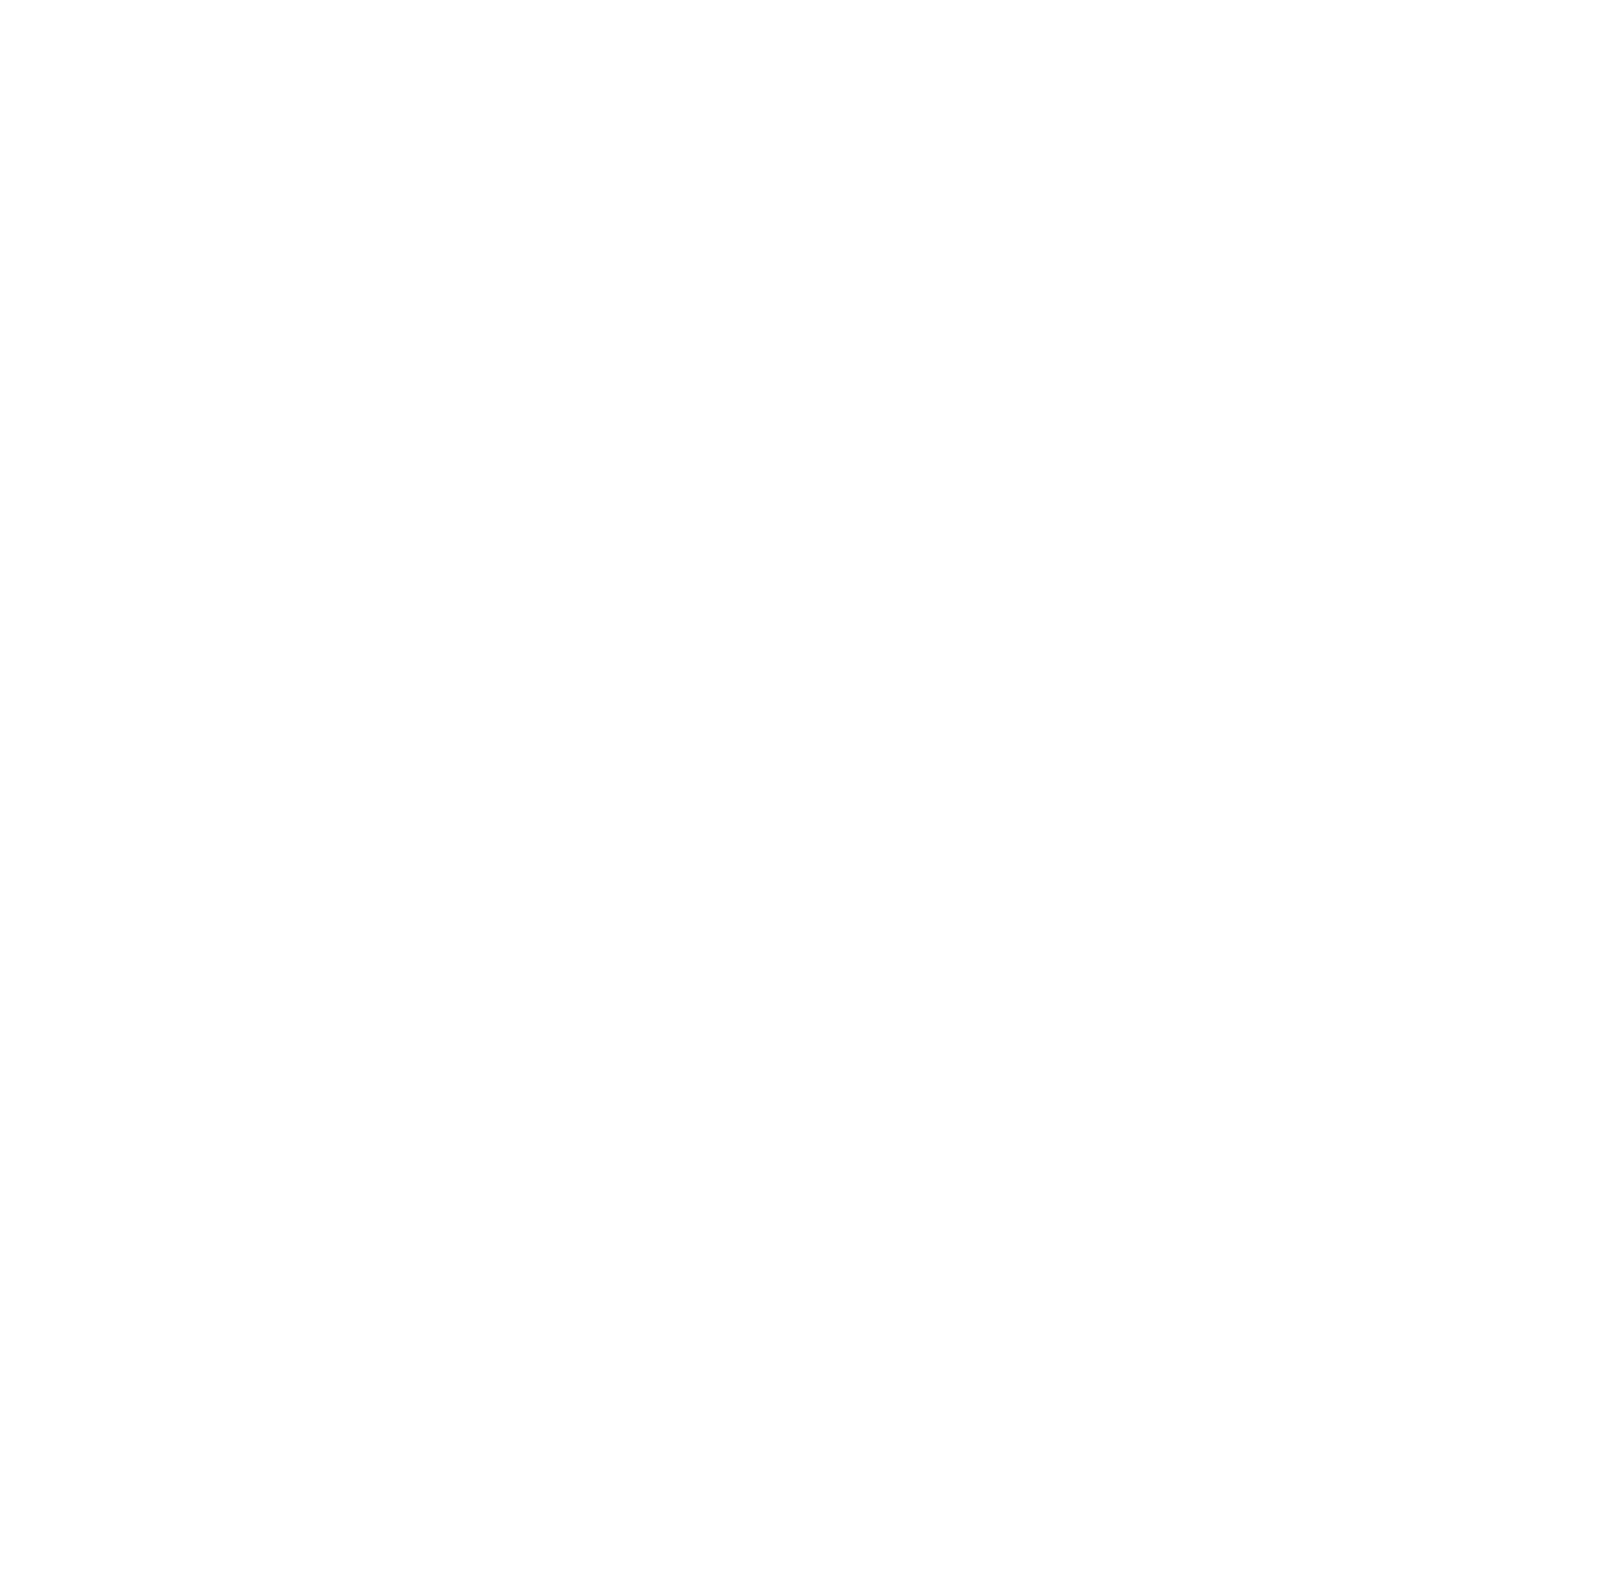 TVアニメ『ヒナまつり』ニューアルバム「ヒナまつり音楽集～酒は涙か溜息か～」収録内容と試聴動画が公開サムネイル画像!